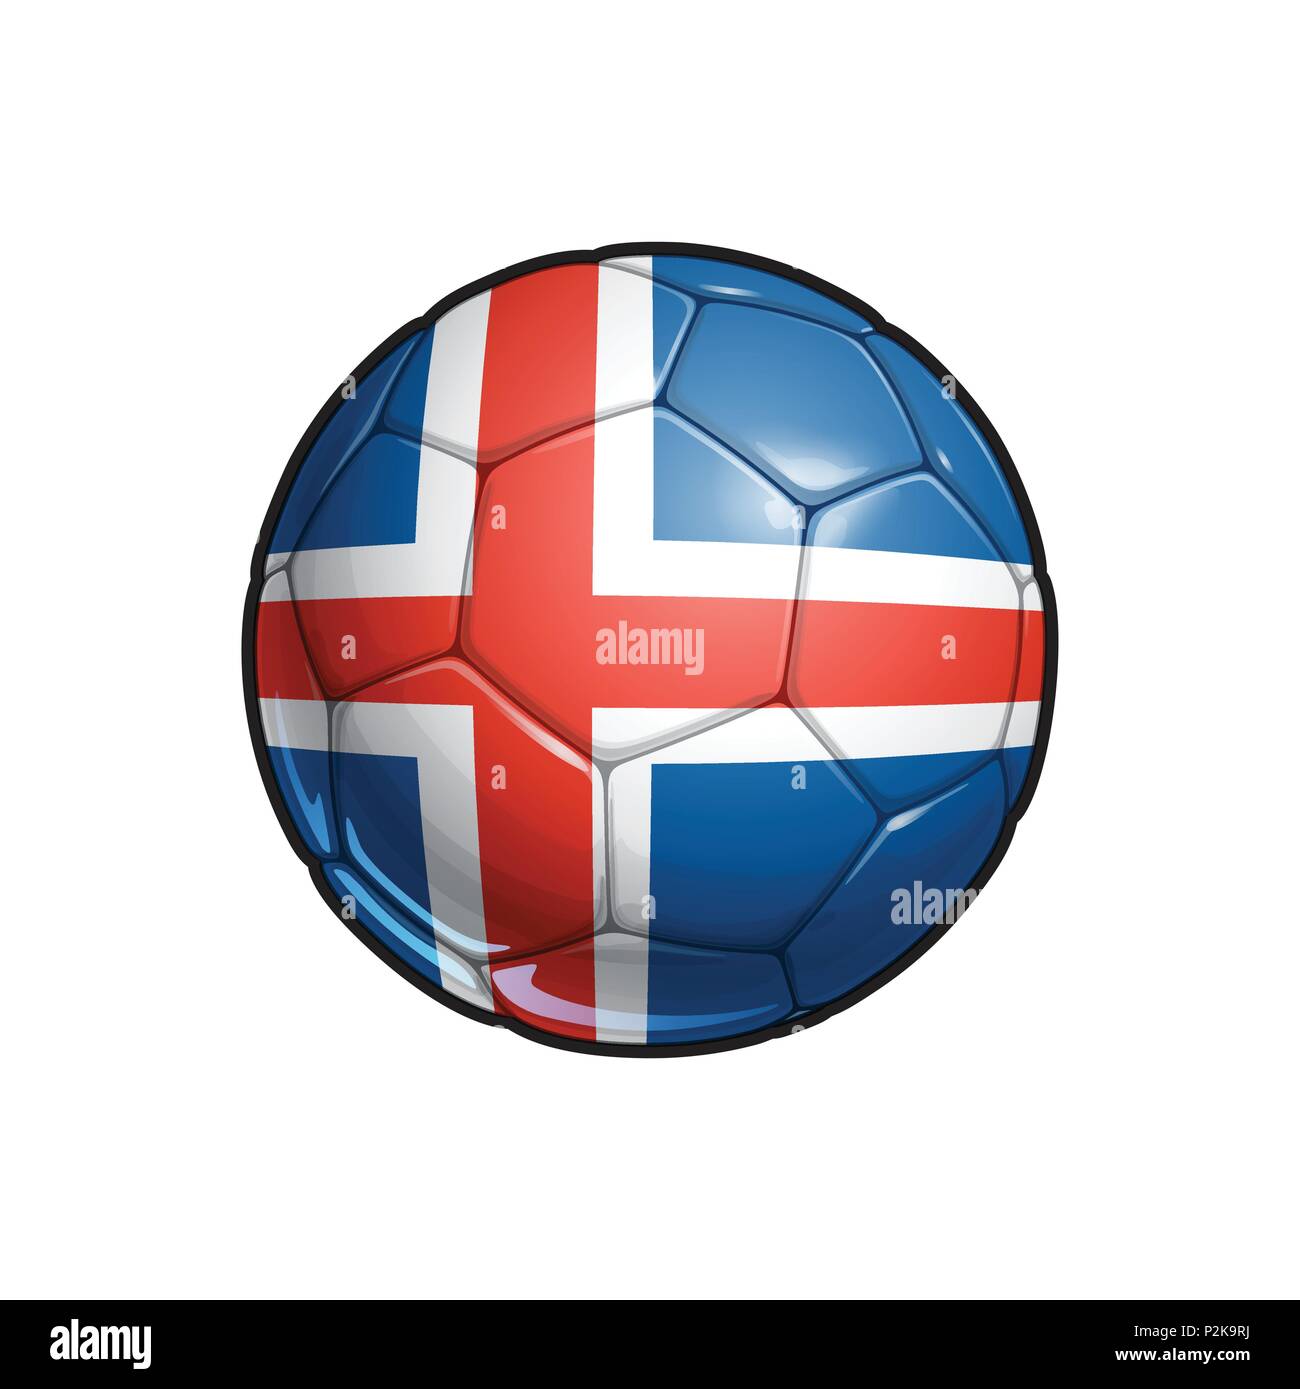 Vector Illustration d'un Football - ballon de football avec les couleurs du drapeau islandais. Tous les éléments parfaitement sur des couches bien définies Illustration de Vecteur